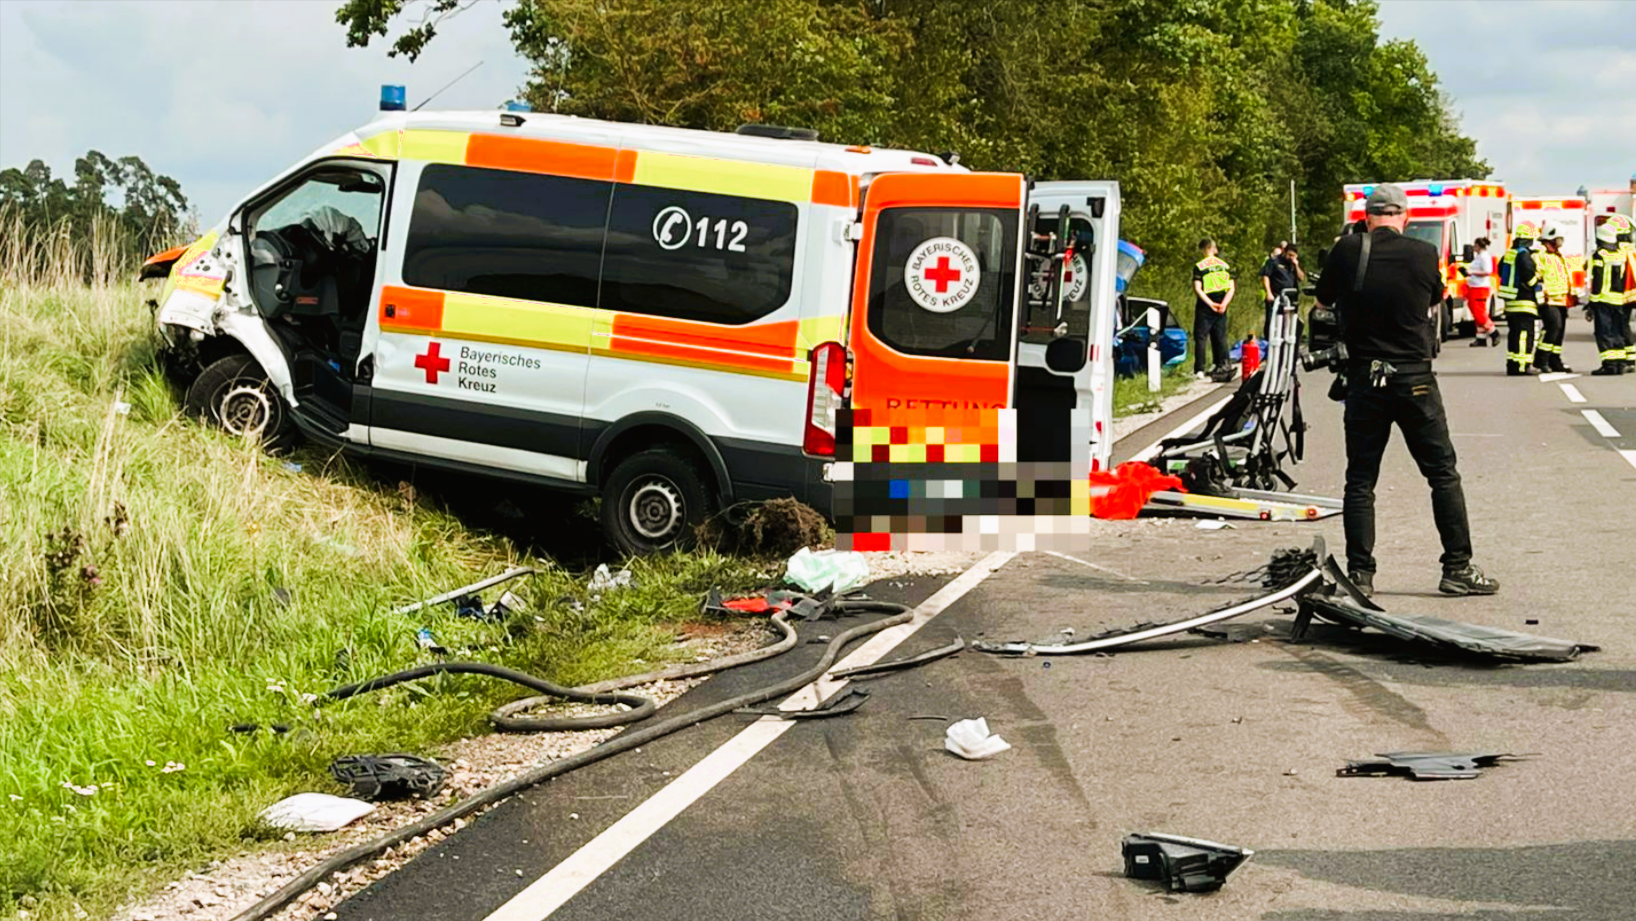 Rettungswagen verunglückt! Auto rast in Krankenwagen auf Einsatzfahrt - 4 Menschen erleiden schwere Verletzungen